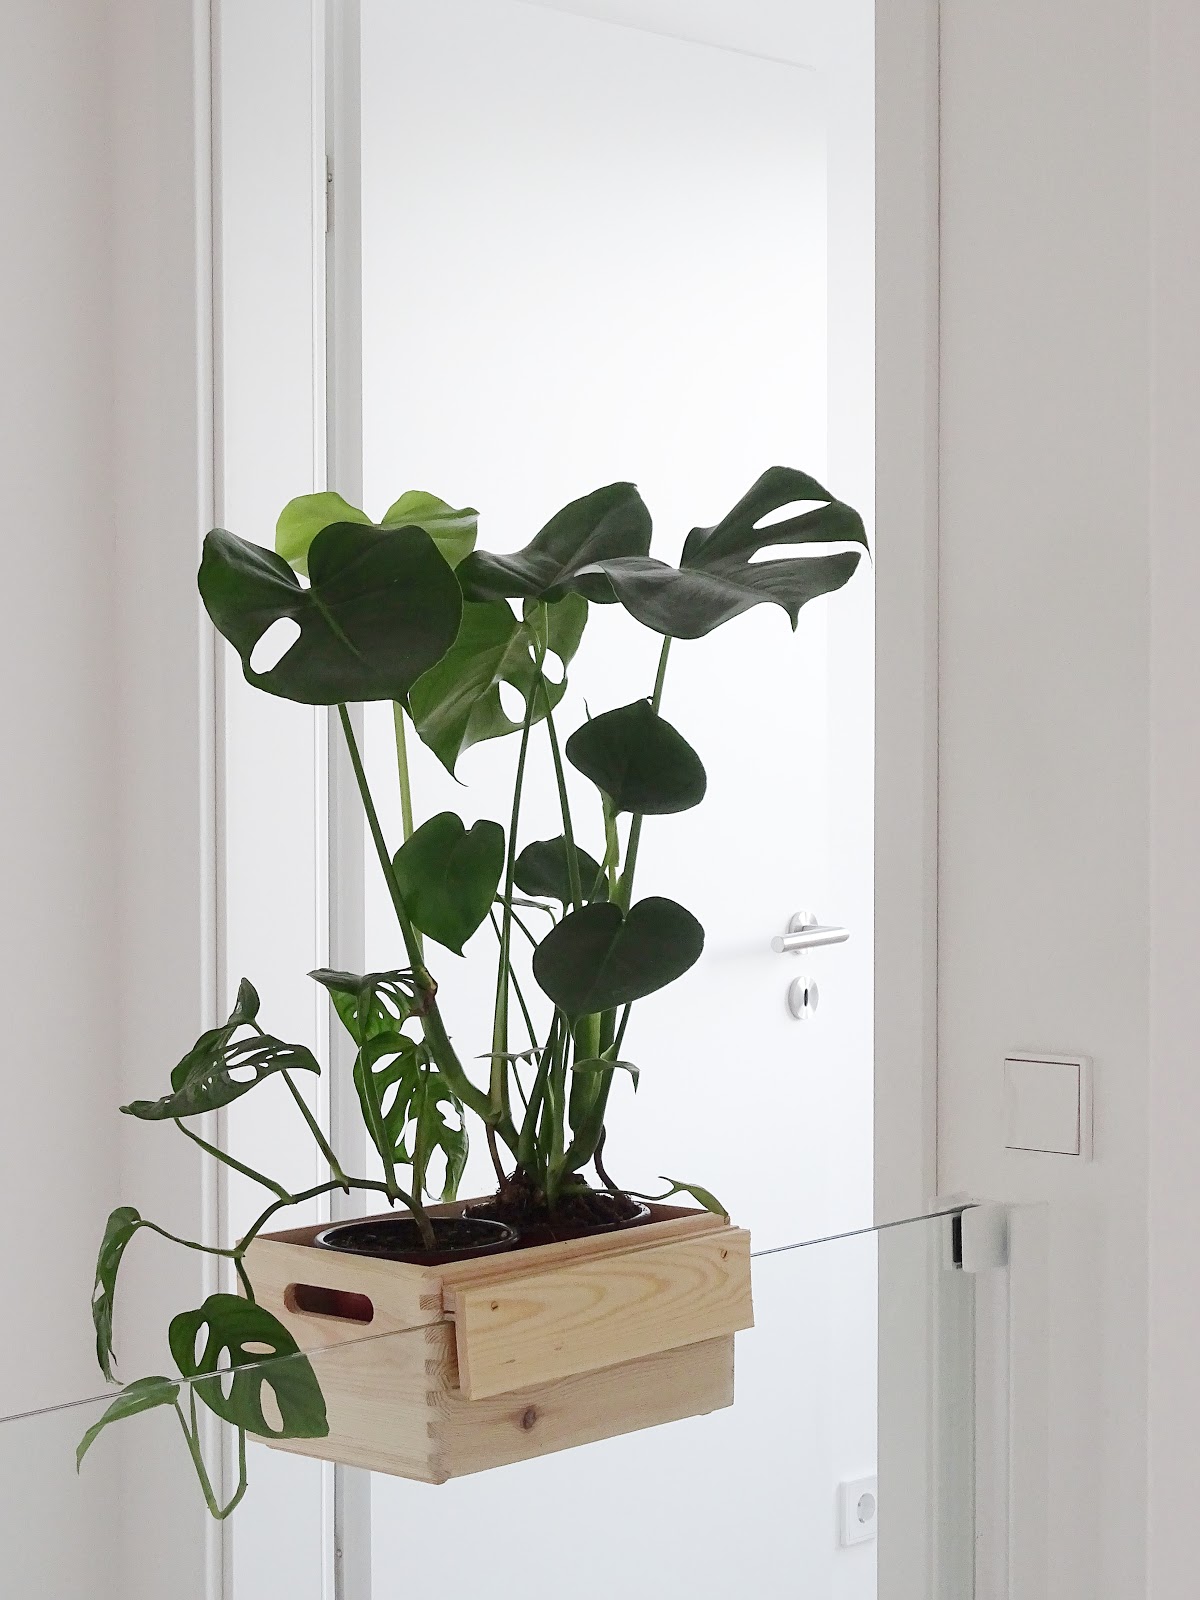 DIY-Blumenkasten zum Aufhängen an Treppengeländern und Galerien plus Pflegetipps und Informationen zur Monstera-Pflanze | mammilade.com